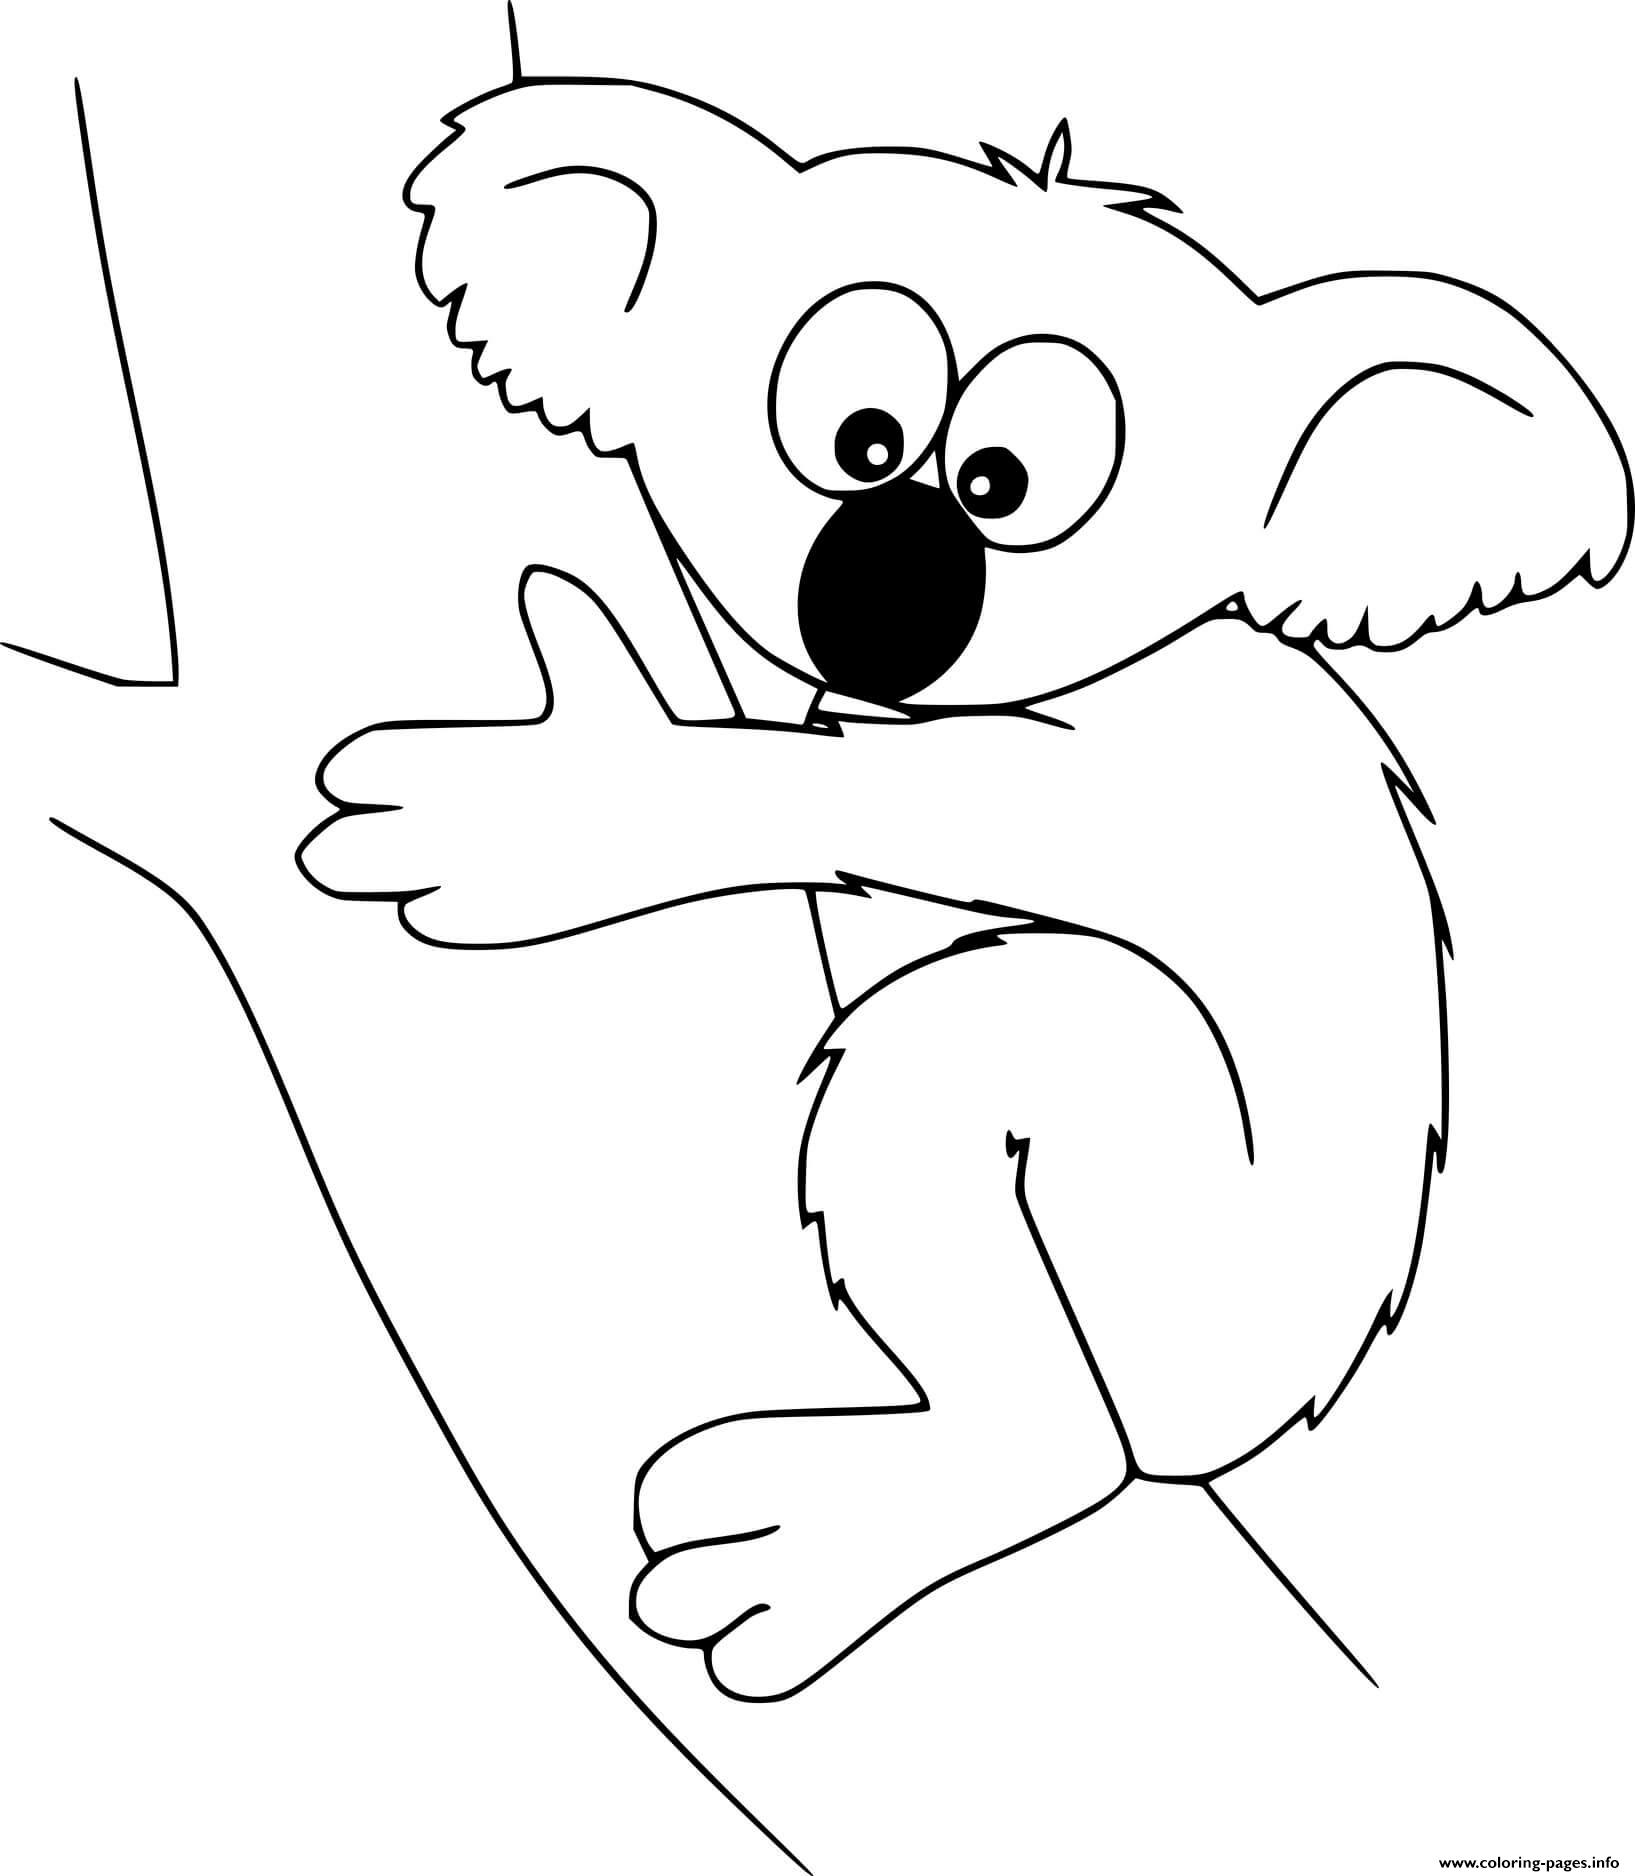 Easy Koala coloring